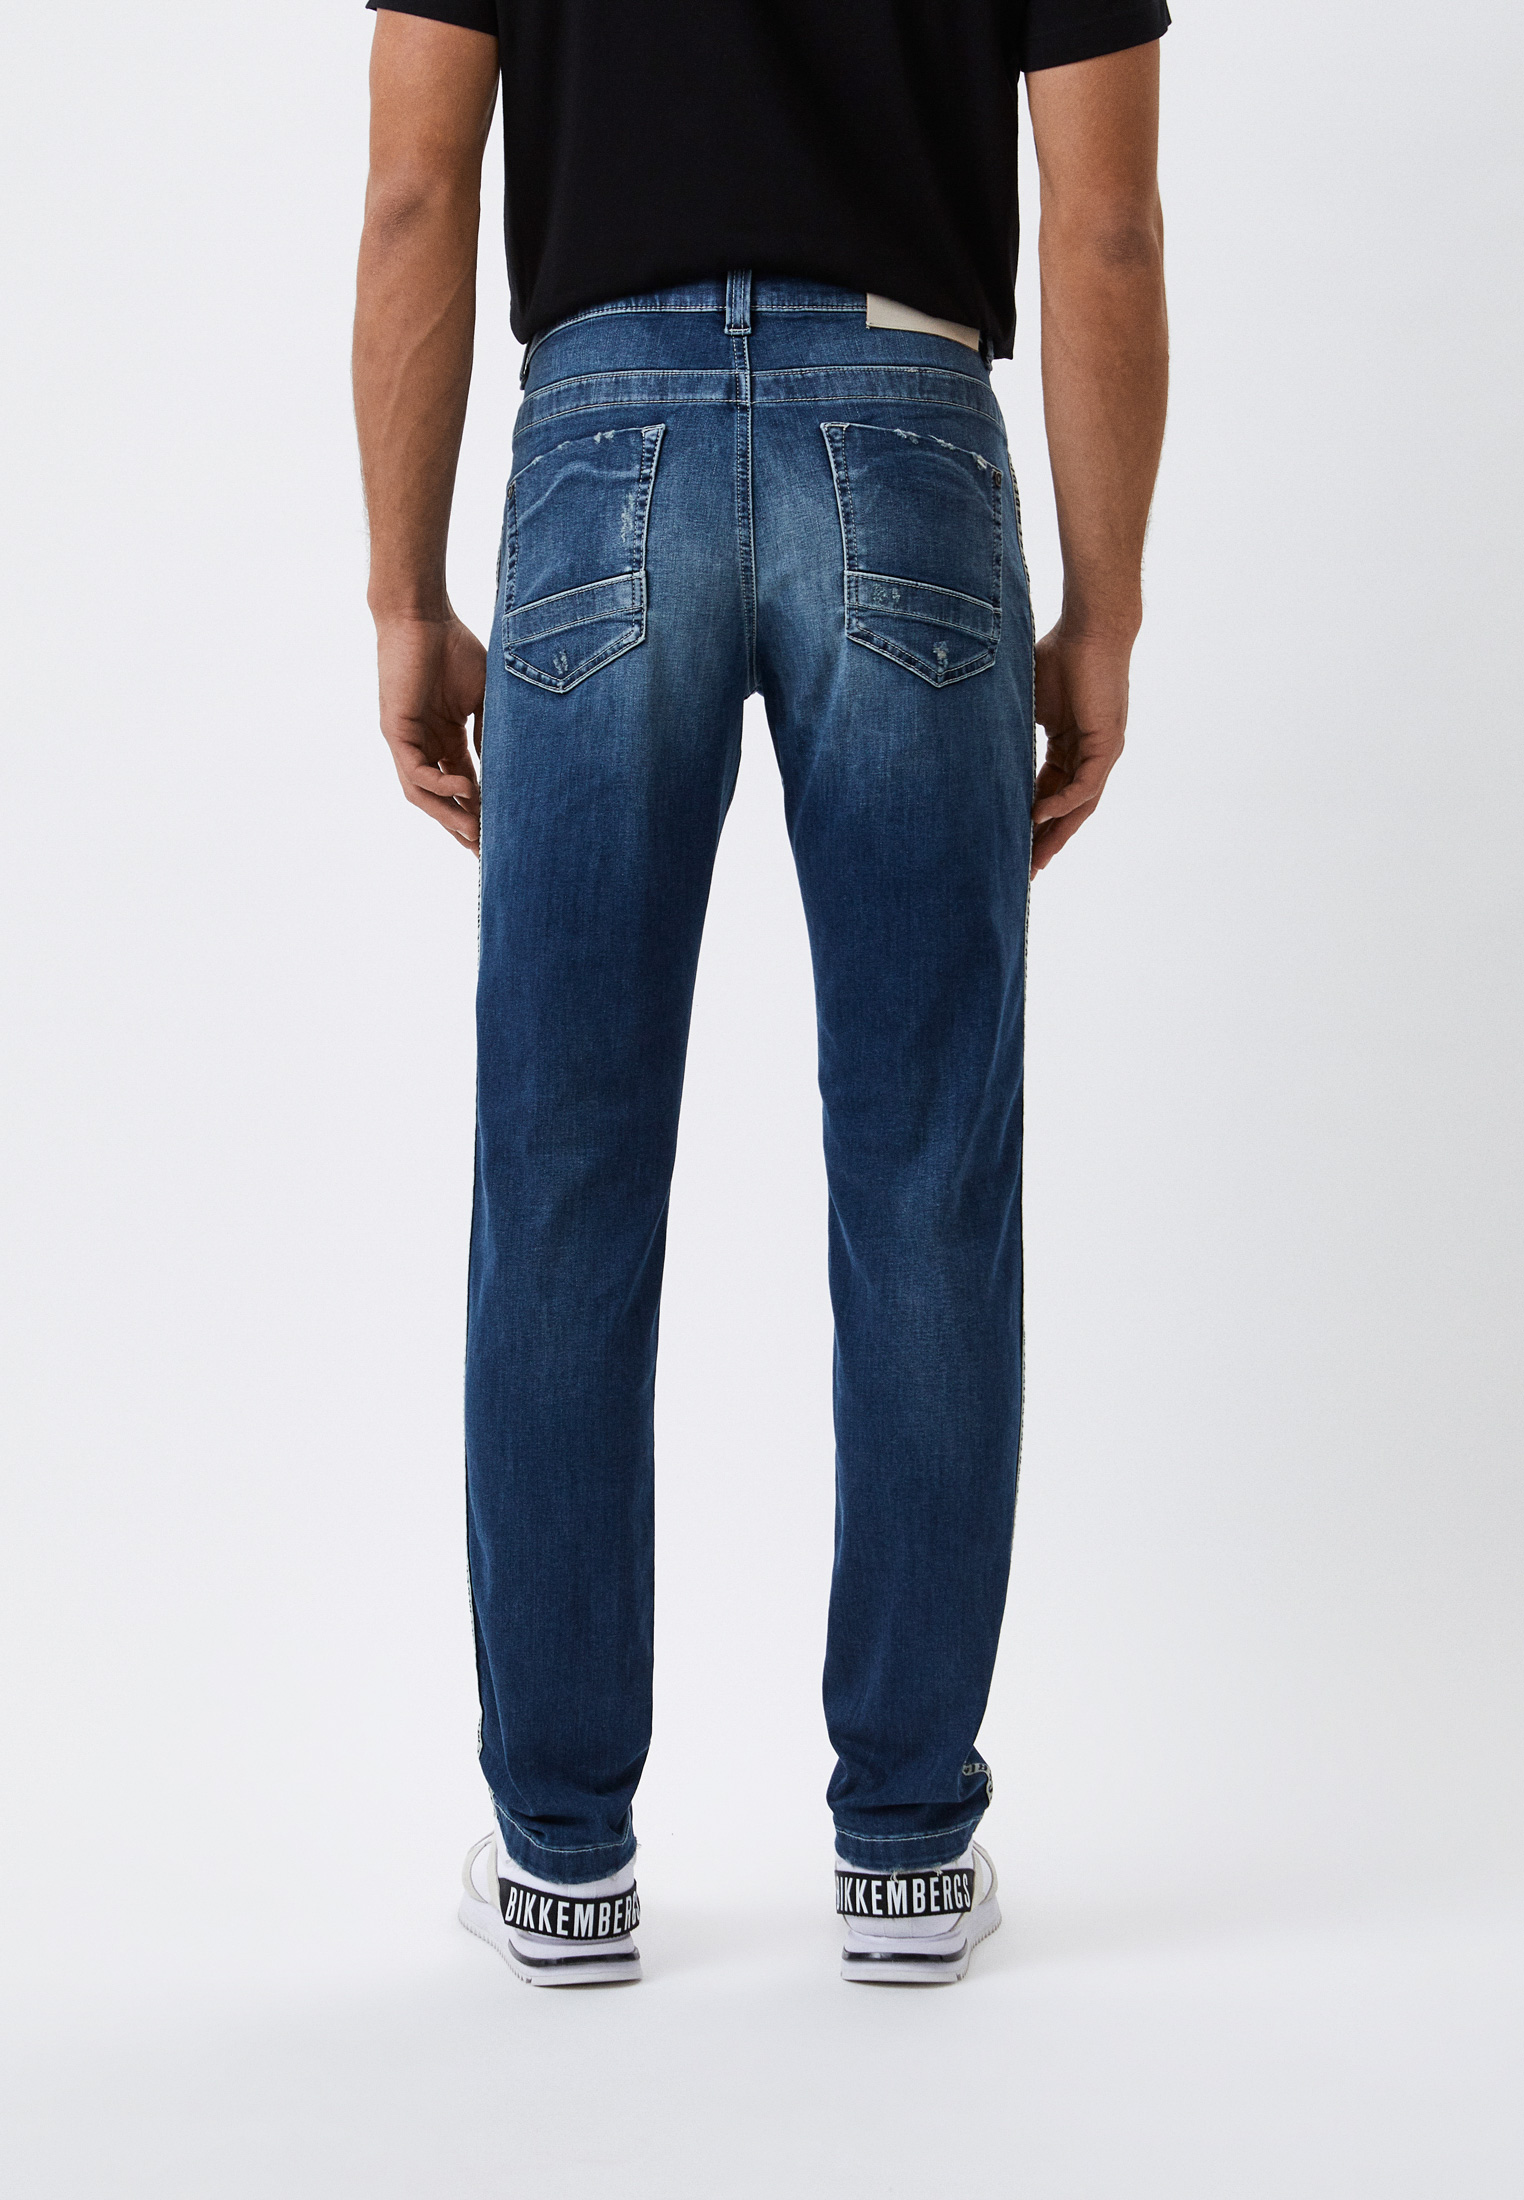 Мужские зауженные джинсы Bikkembergs (Биккембергс) C Q 101 1A S 3511: изображение 3